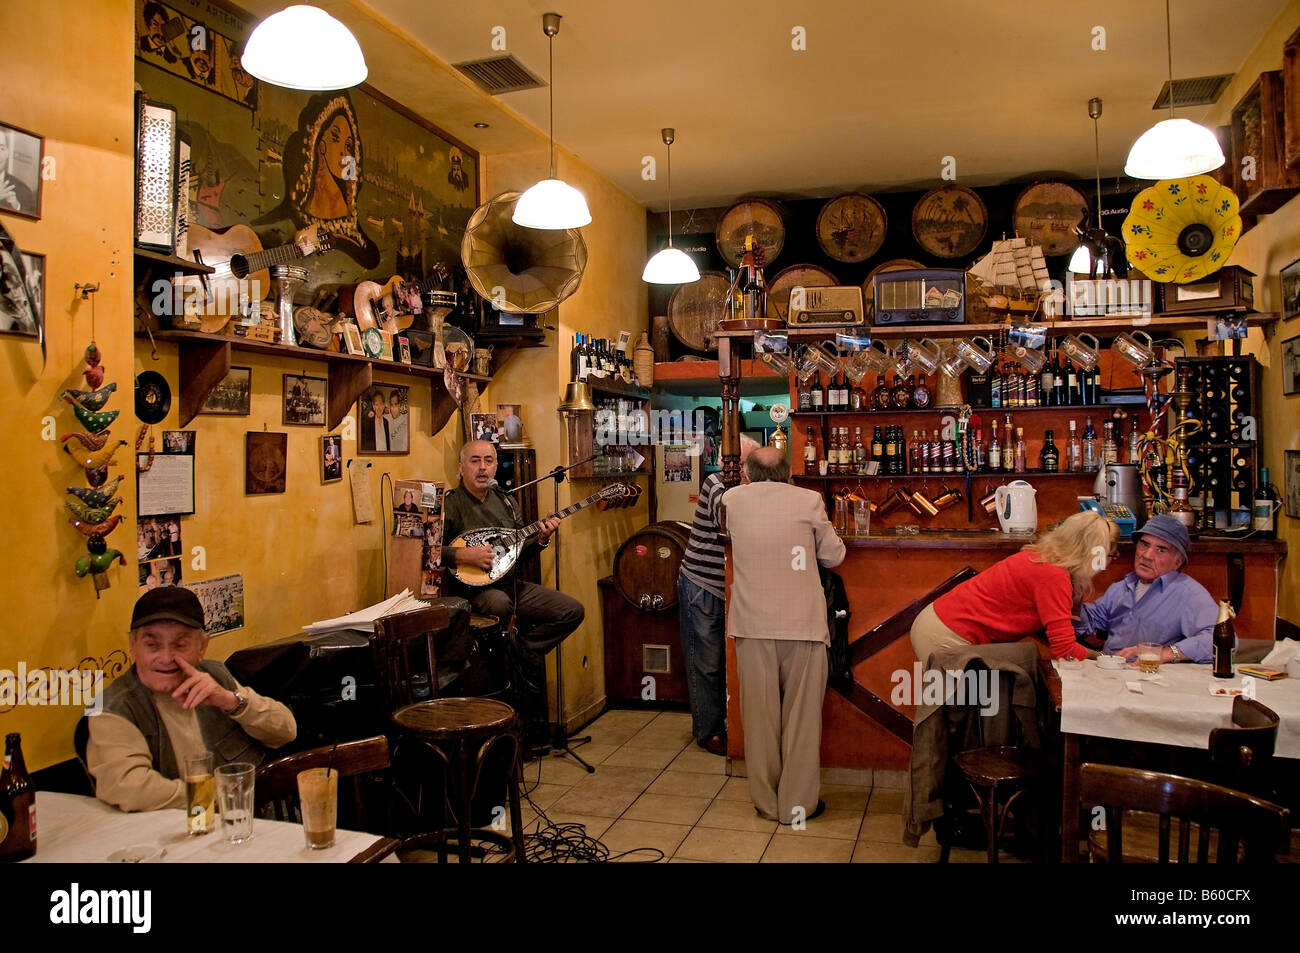 All'interno di una caffetteria locale nel porto del Pireo caos musica sitar bere cafe bar uomo donna Atene Grecia greco Foto Stock